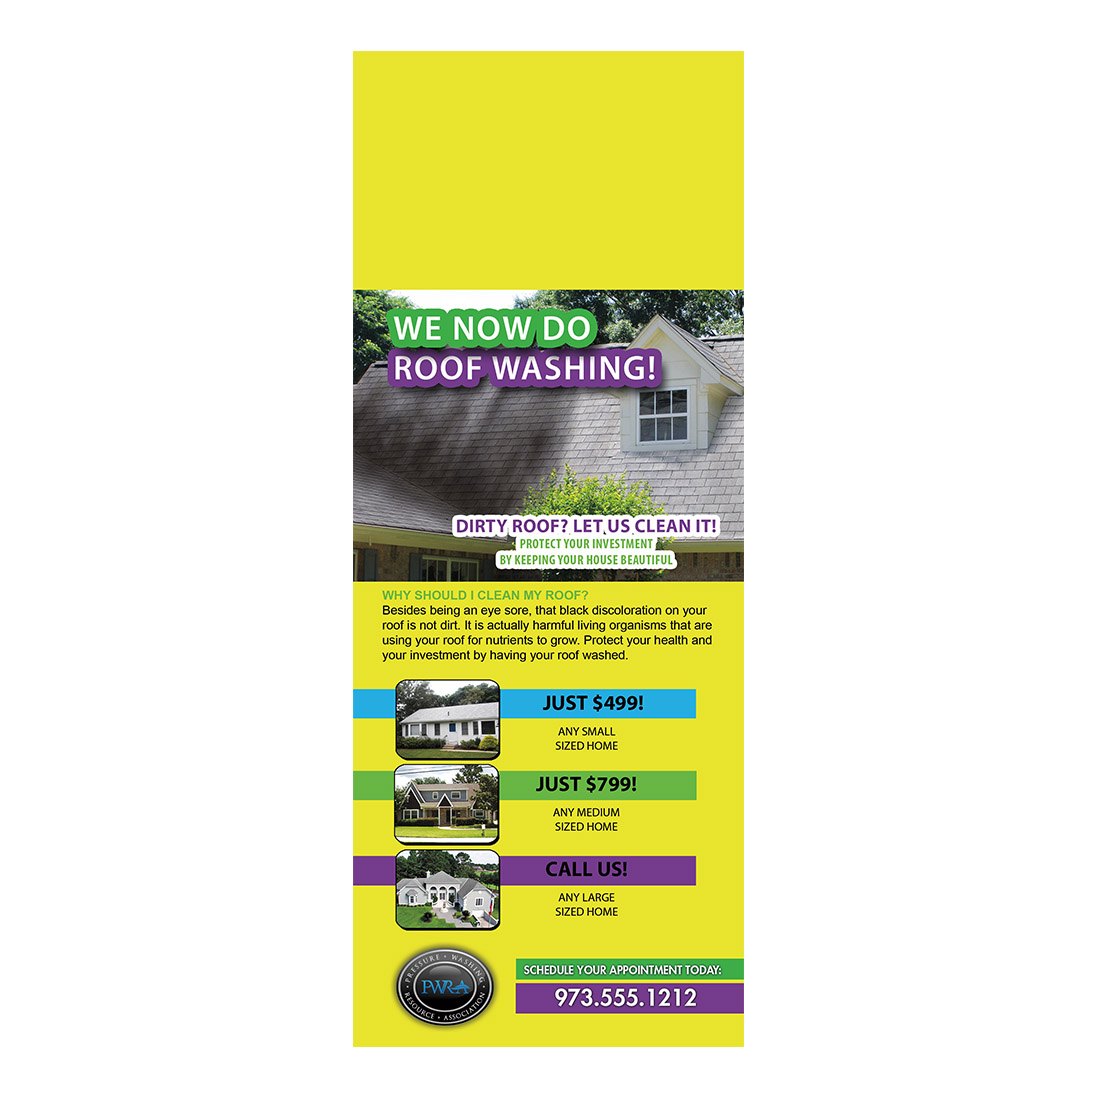 We Do Roof Washing Design Suite - Doorhanger - Front View